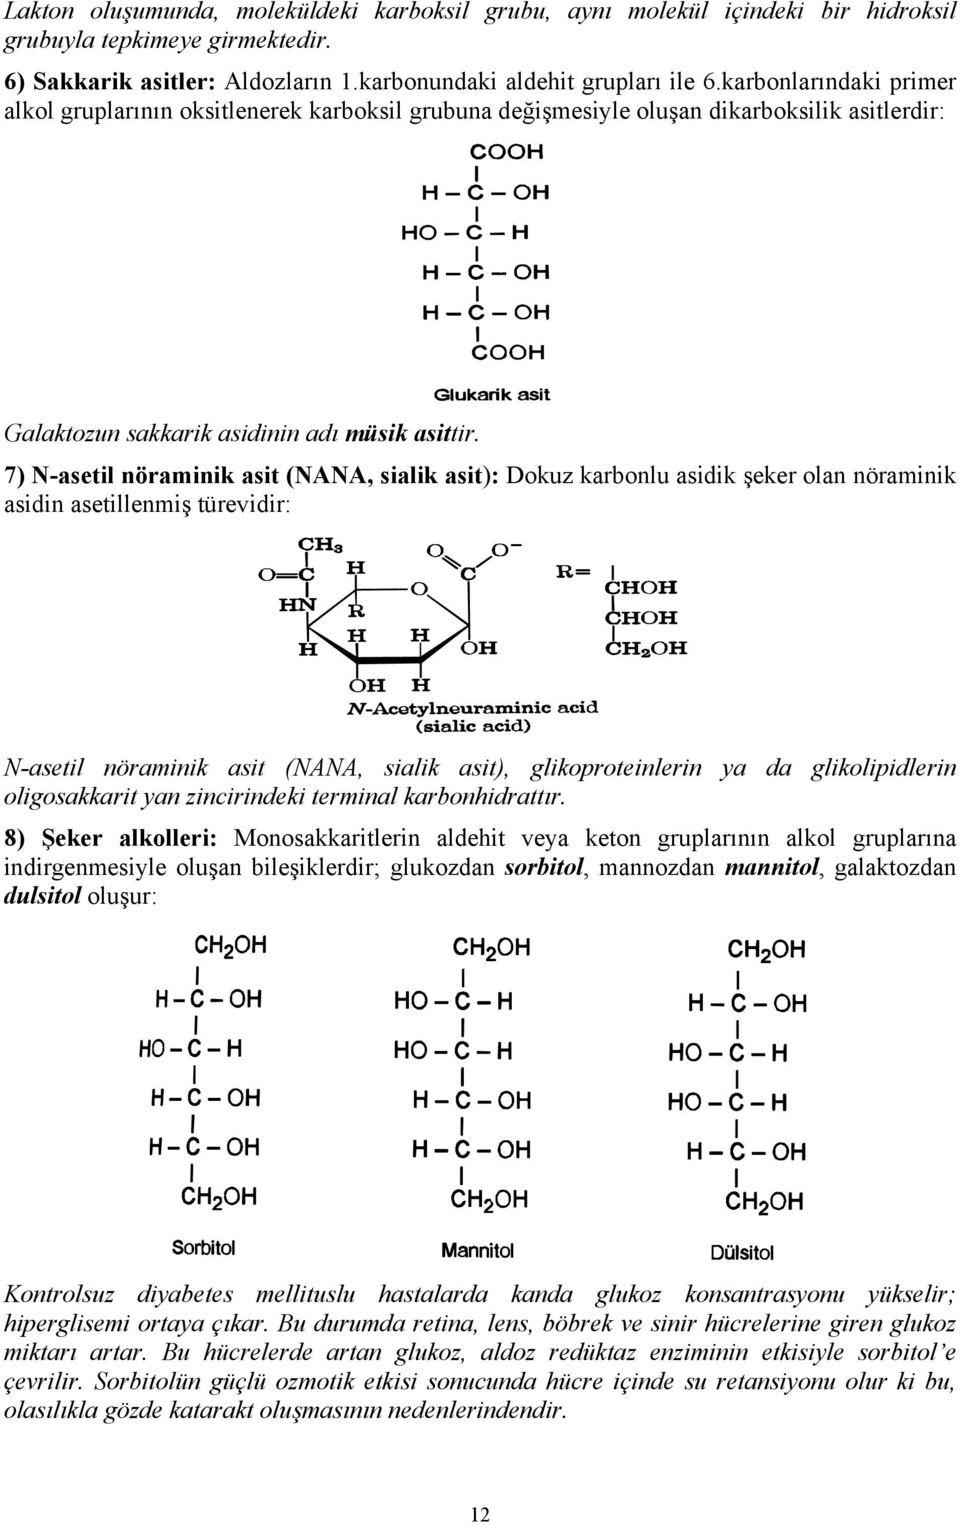 7) N-asetil nöraminik asit (NANA, sialik asit): Dokuz karbonlu asidik şeker olan nöraminik asidin asetillenmiş türevidir: N-asetil nöraminik asit (NANA, sialik asit), glikoproteinlerin ya da